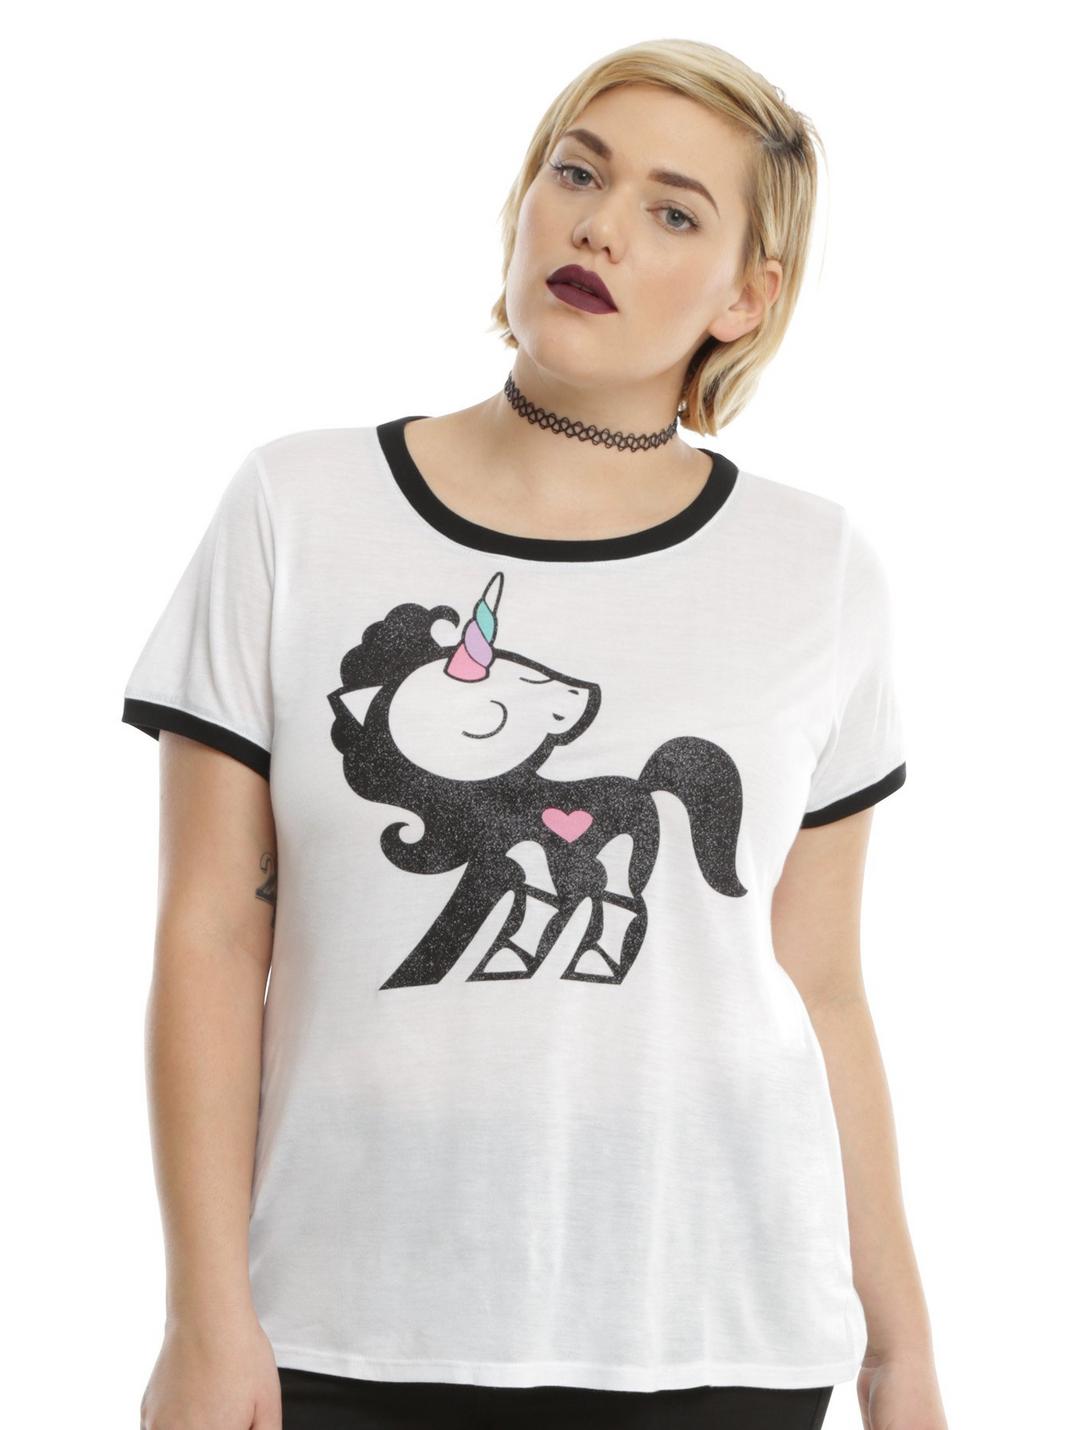 Skelanimals Bonita Unicorn Girls Ringer T-Shirt Plus Size, WHITE, hi-res